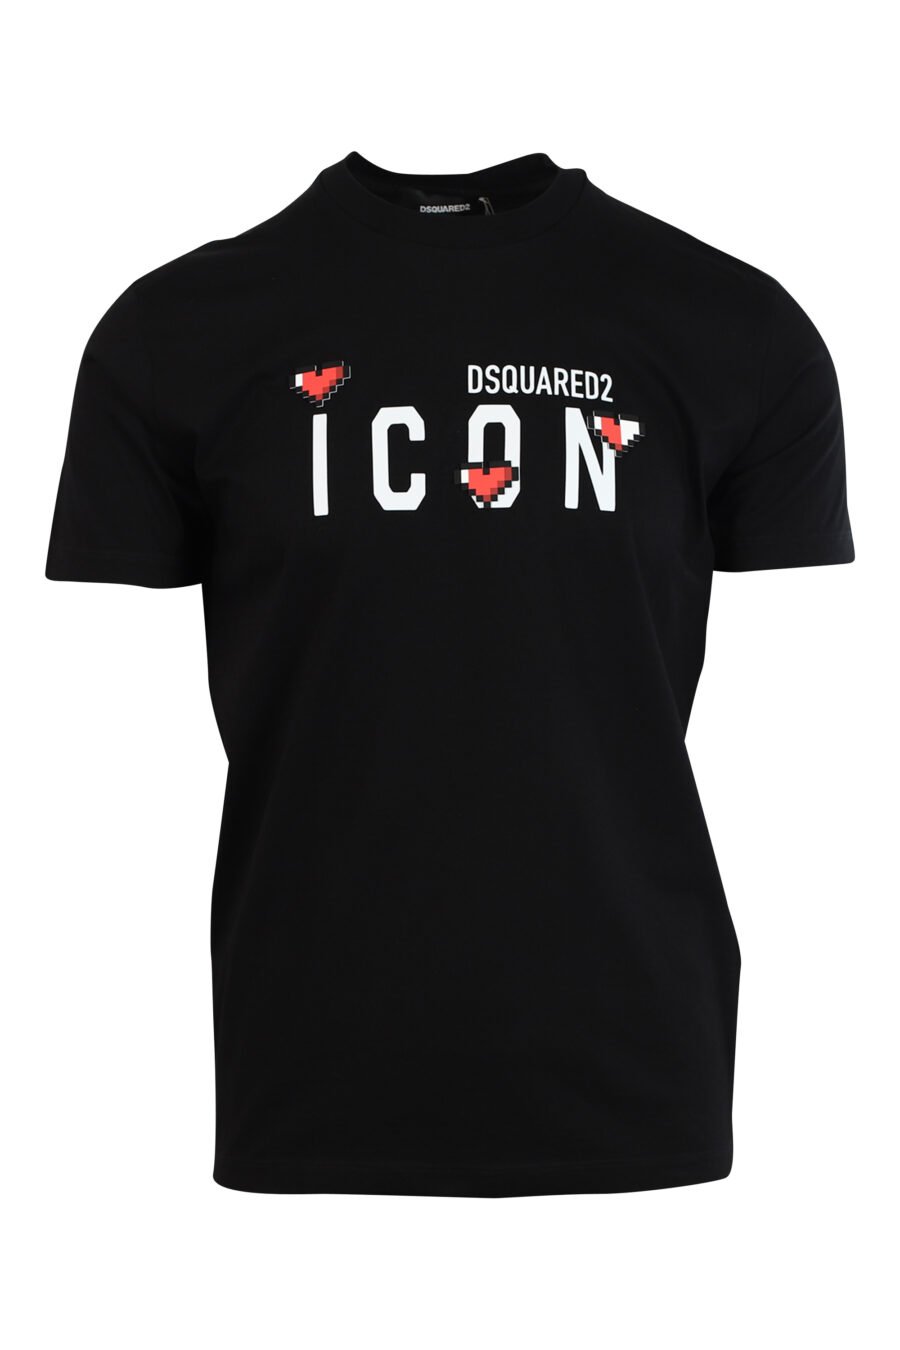 T-shirt preta com maxilogo "icon heart pixel" - 8052134980910